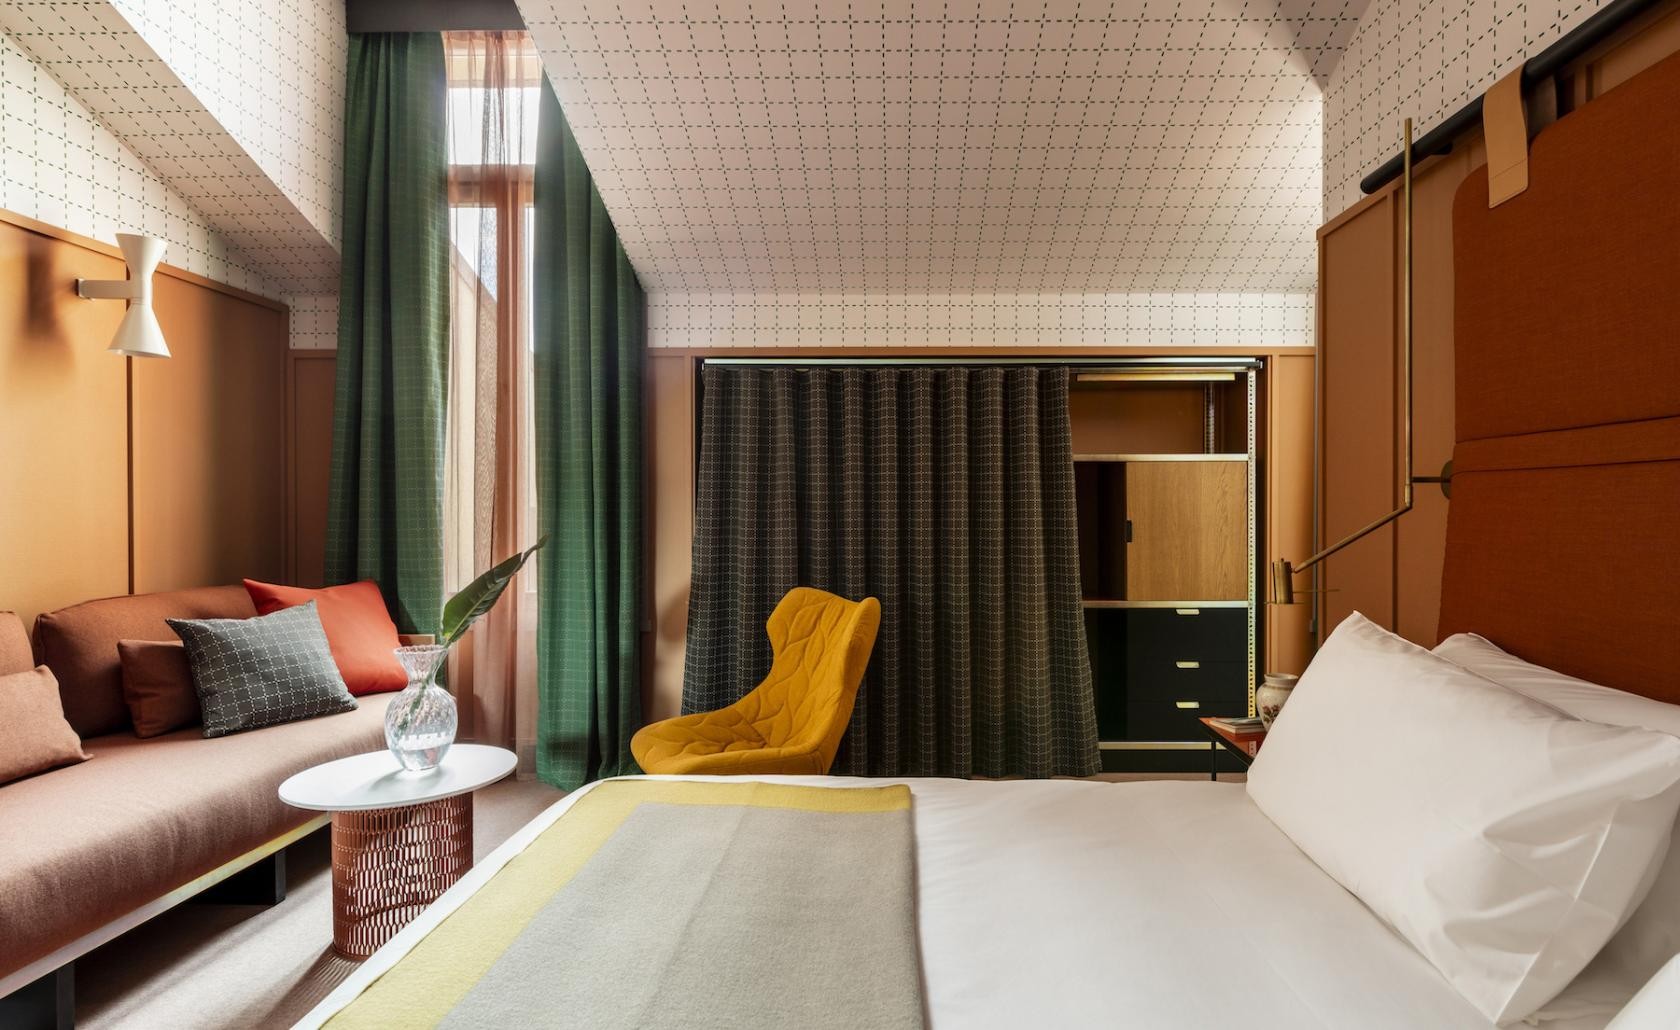 10 quartos de hotéis lindos para você se inspirar (Foto: divulgação )